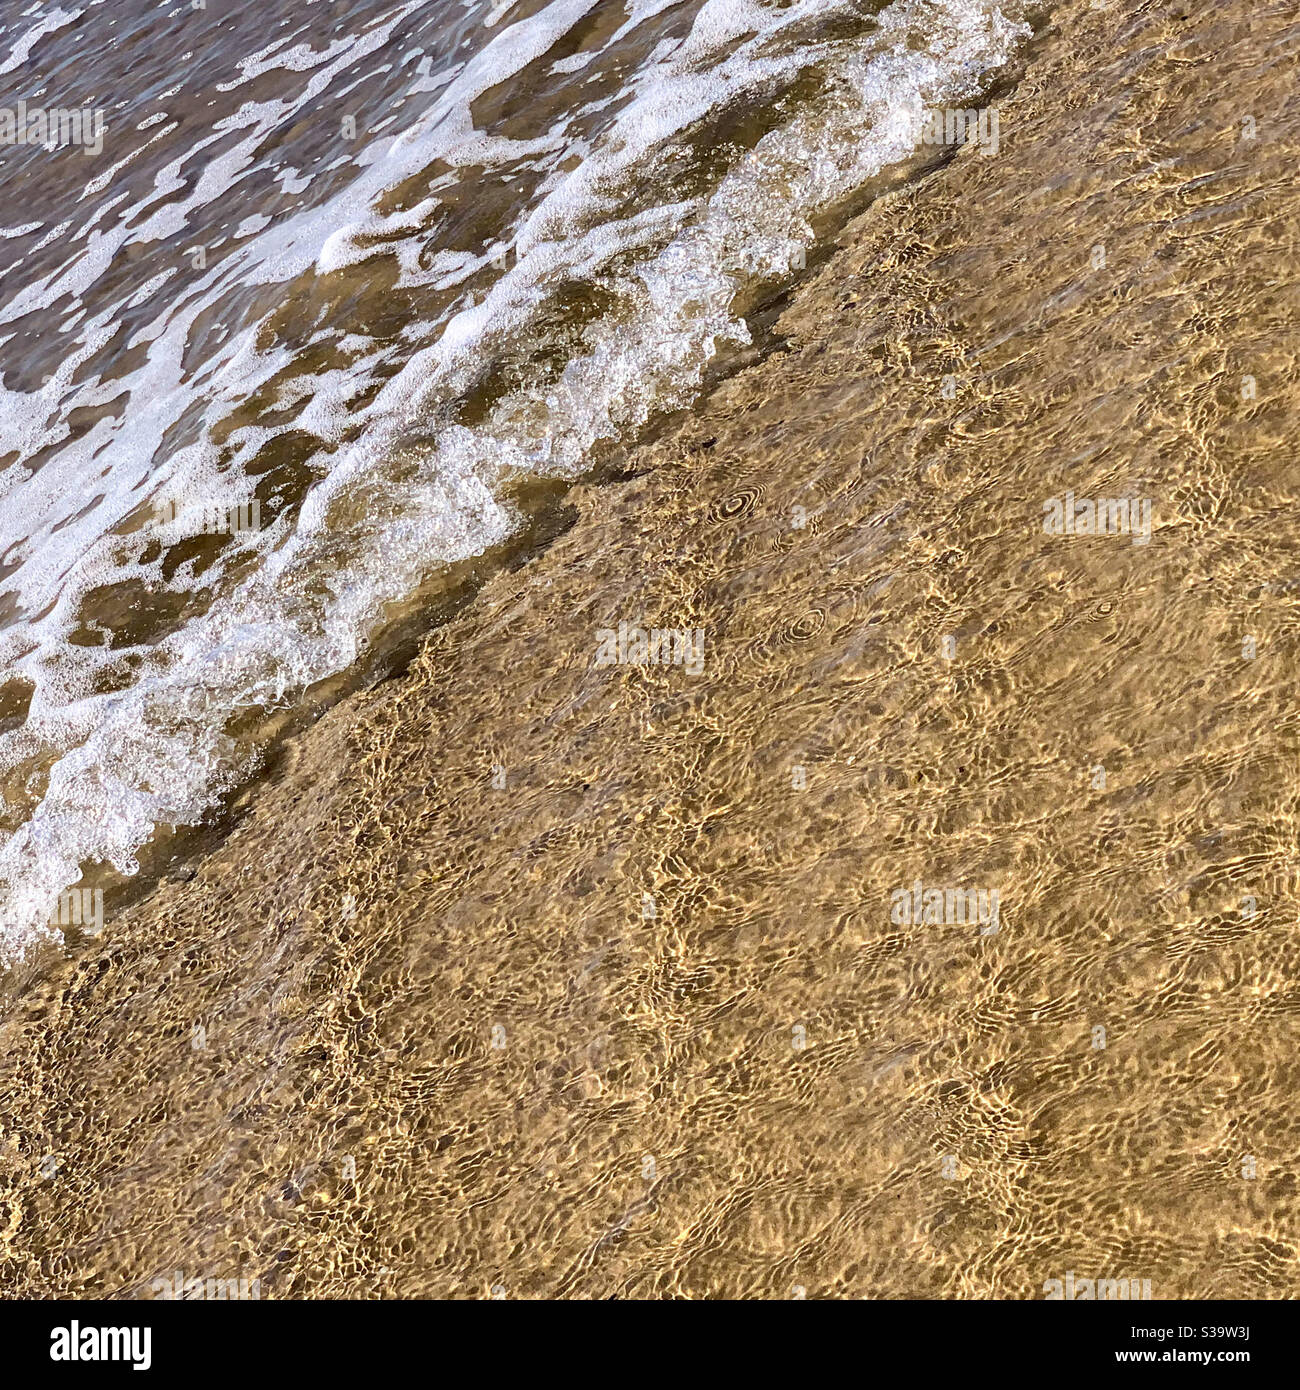 Patrones en la arena, agua de mar lavándose en la playa, pequeñas olas haciendo espuma, perspectiva diagonal Foto de stock